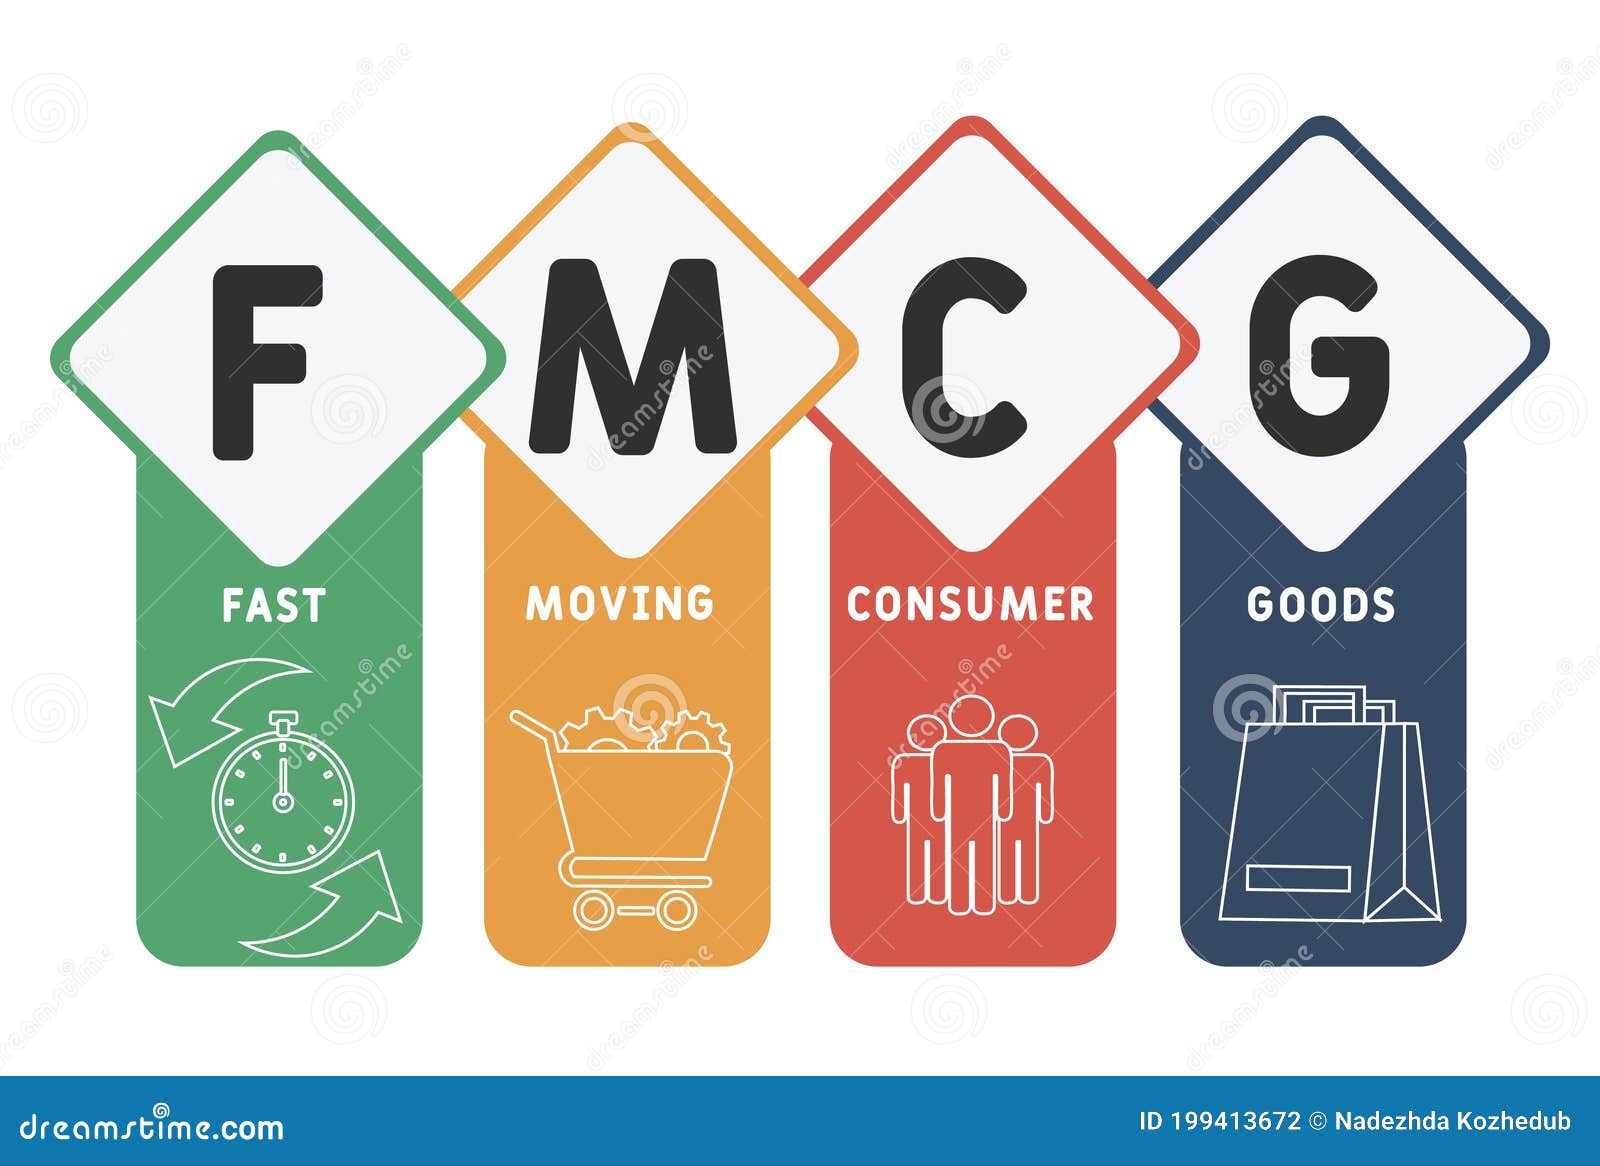 Товары fmcg. FMCG товары. FMCG картинки. Ассортимент FMCG. FMCG продукты.